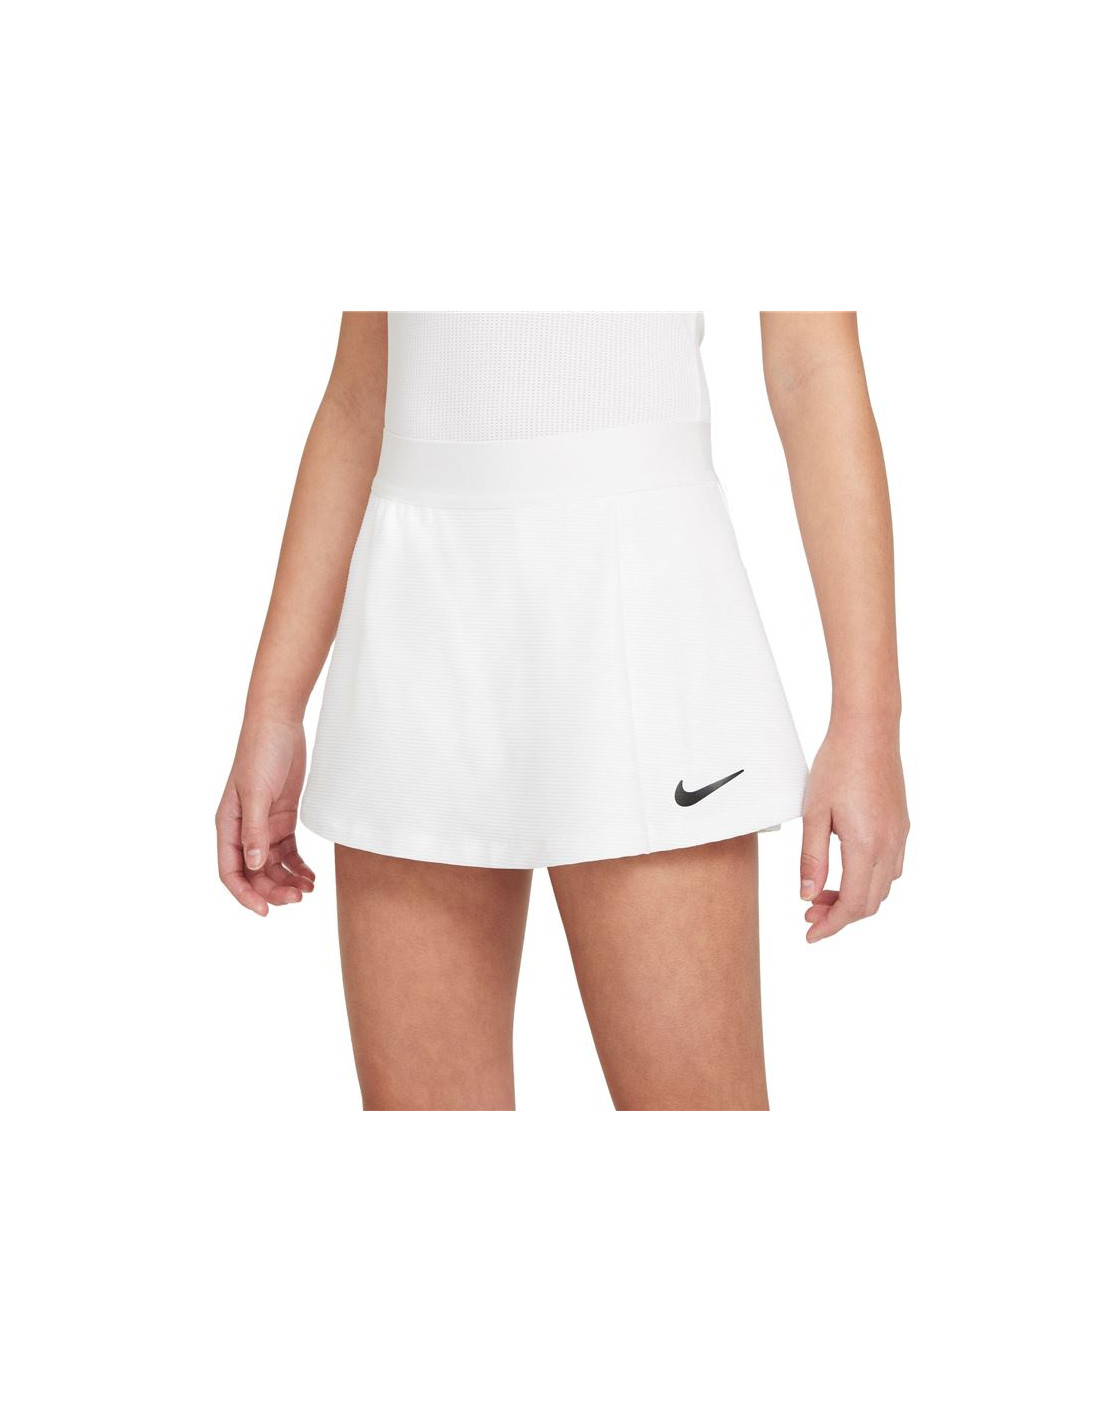 Nuevo Tenis Nike Compra Online a Precios Super